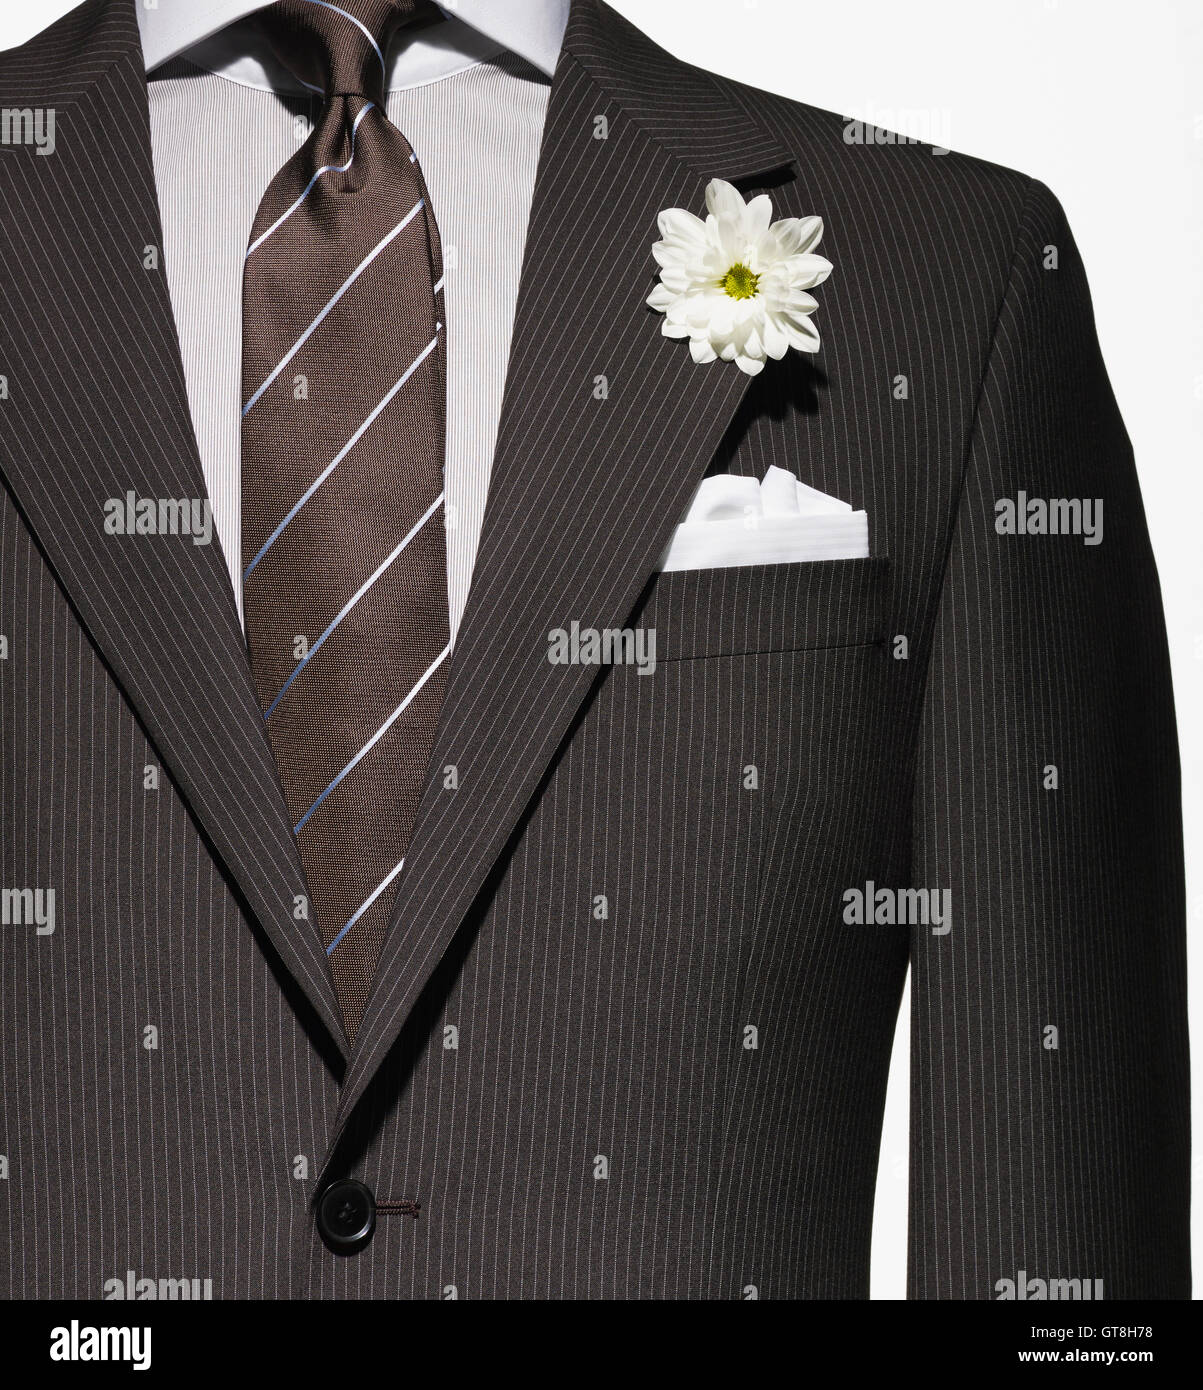 Détail d'un brown veste de costume avec chemise et cravate, et mouchoir  blanc et fleurs Photo Stock - Alamy